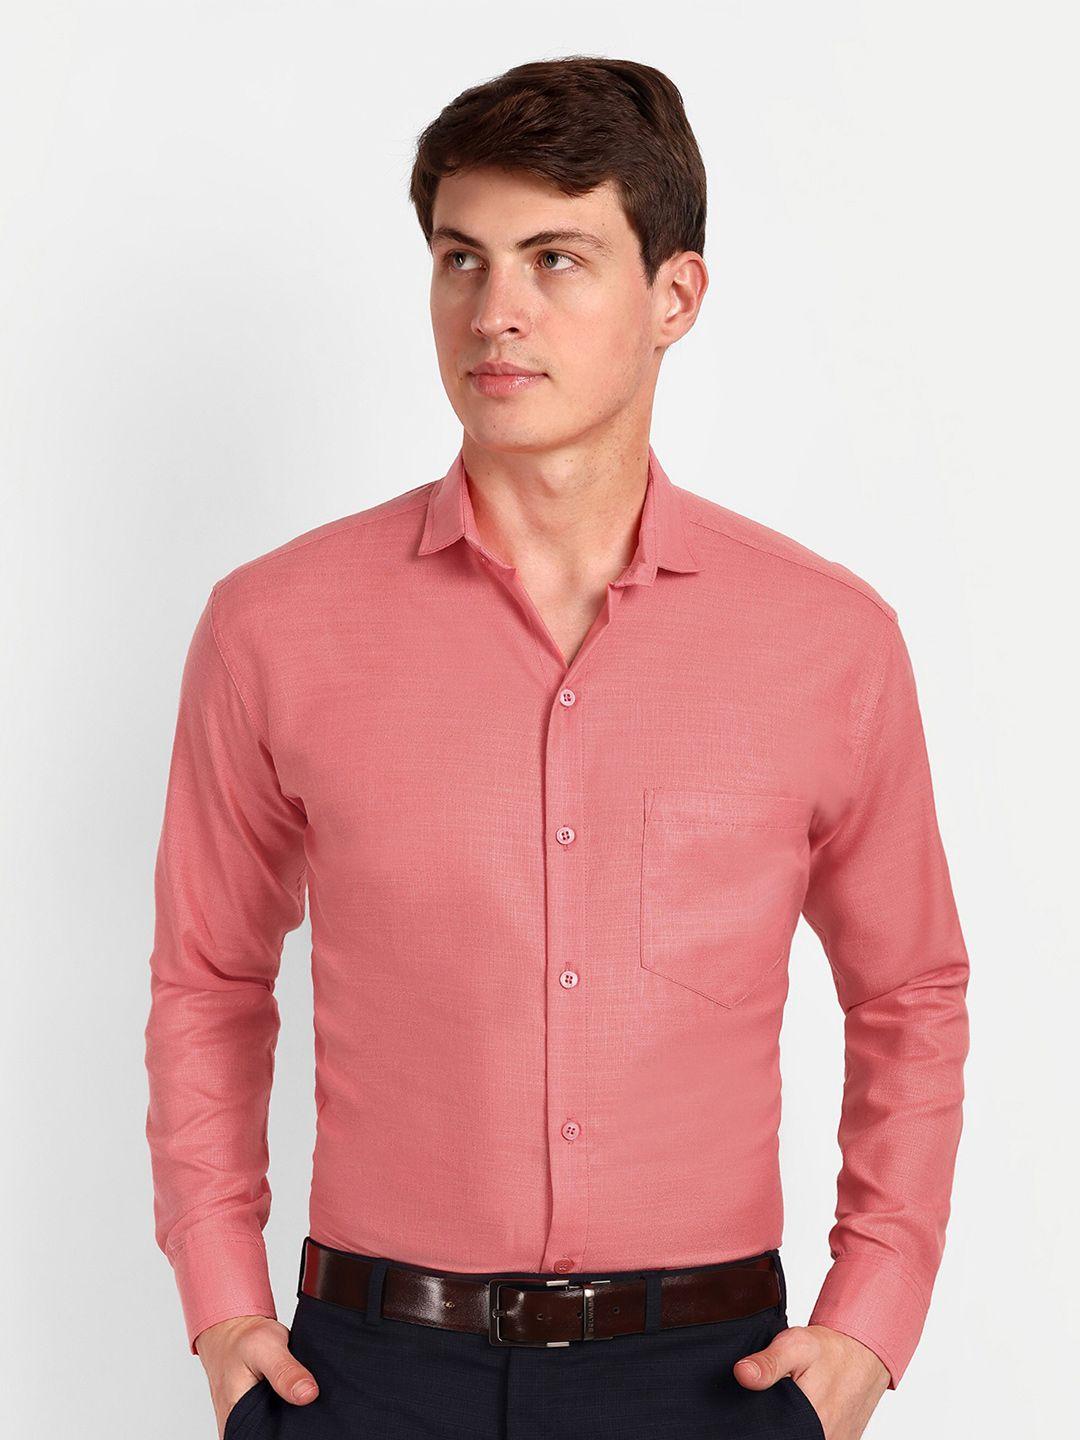 colorwings men coral comfort semi sheer formal shirt